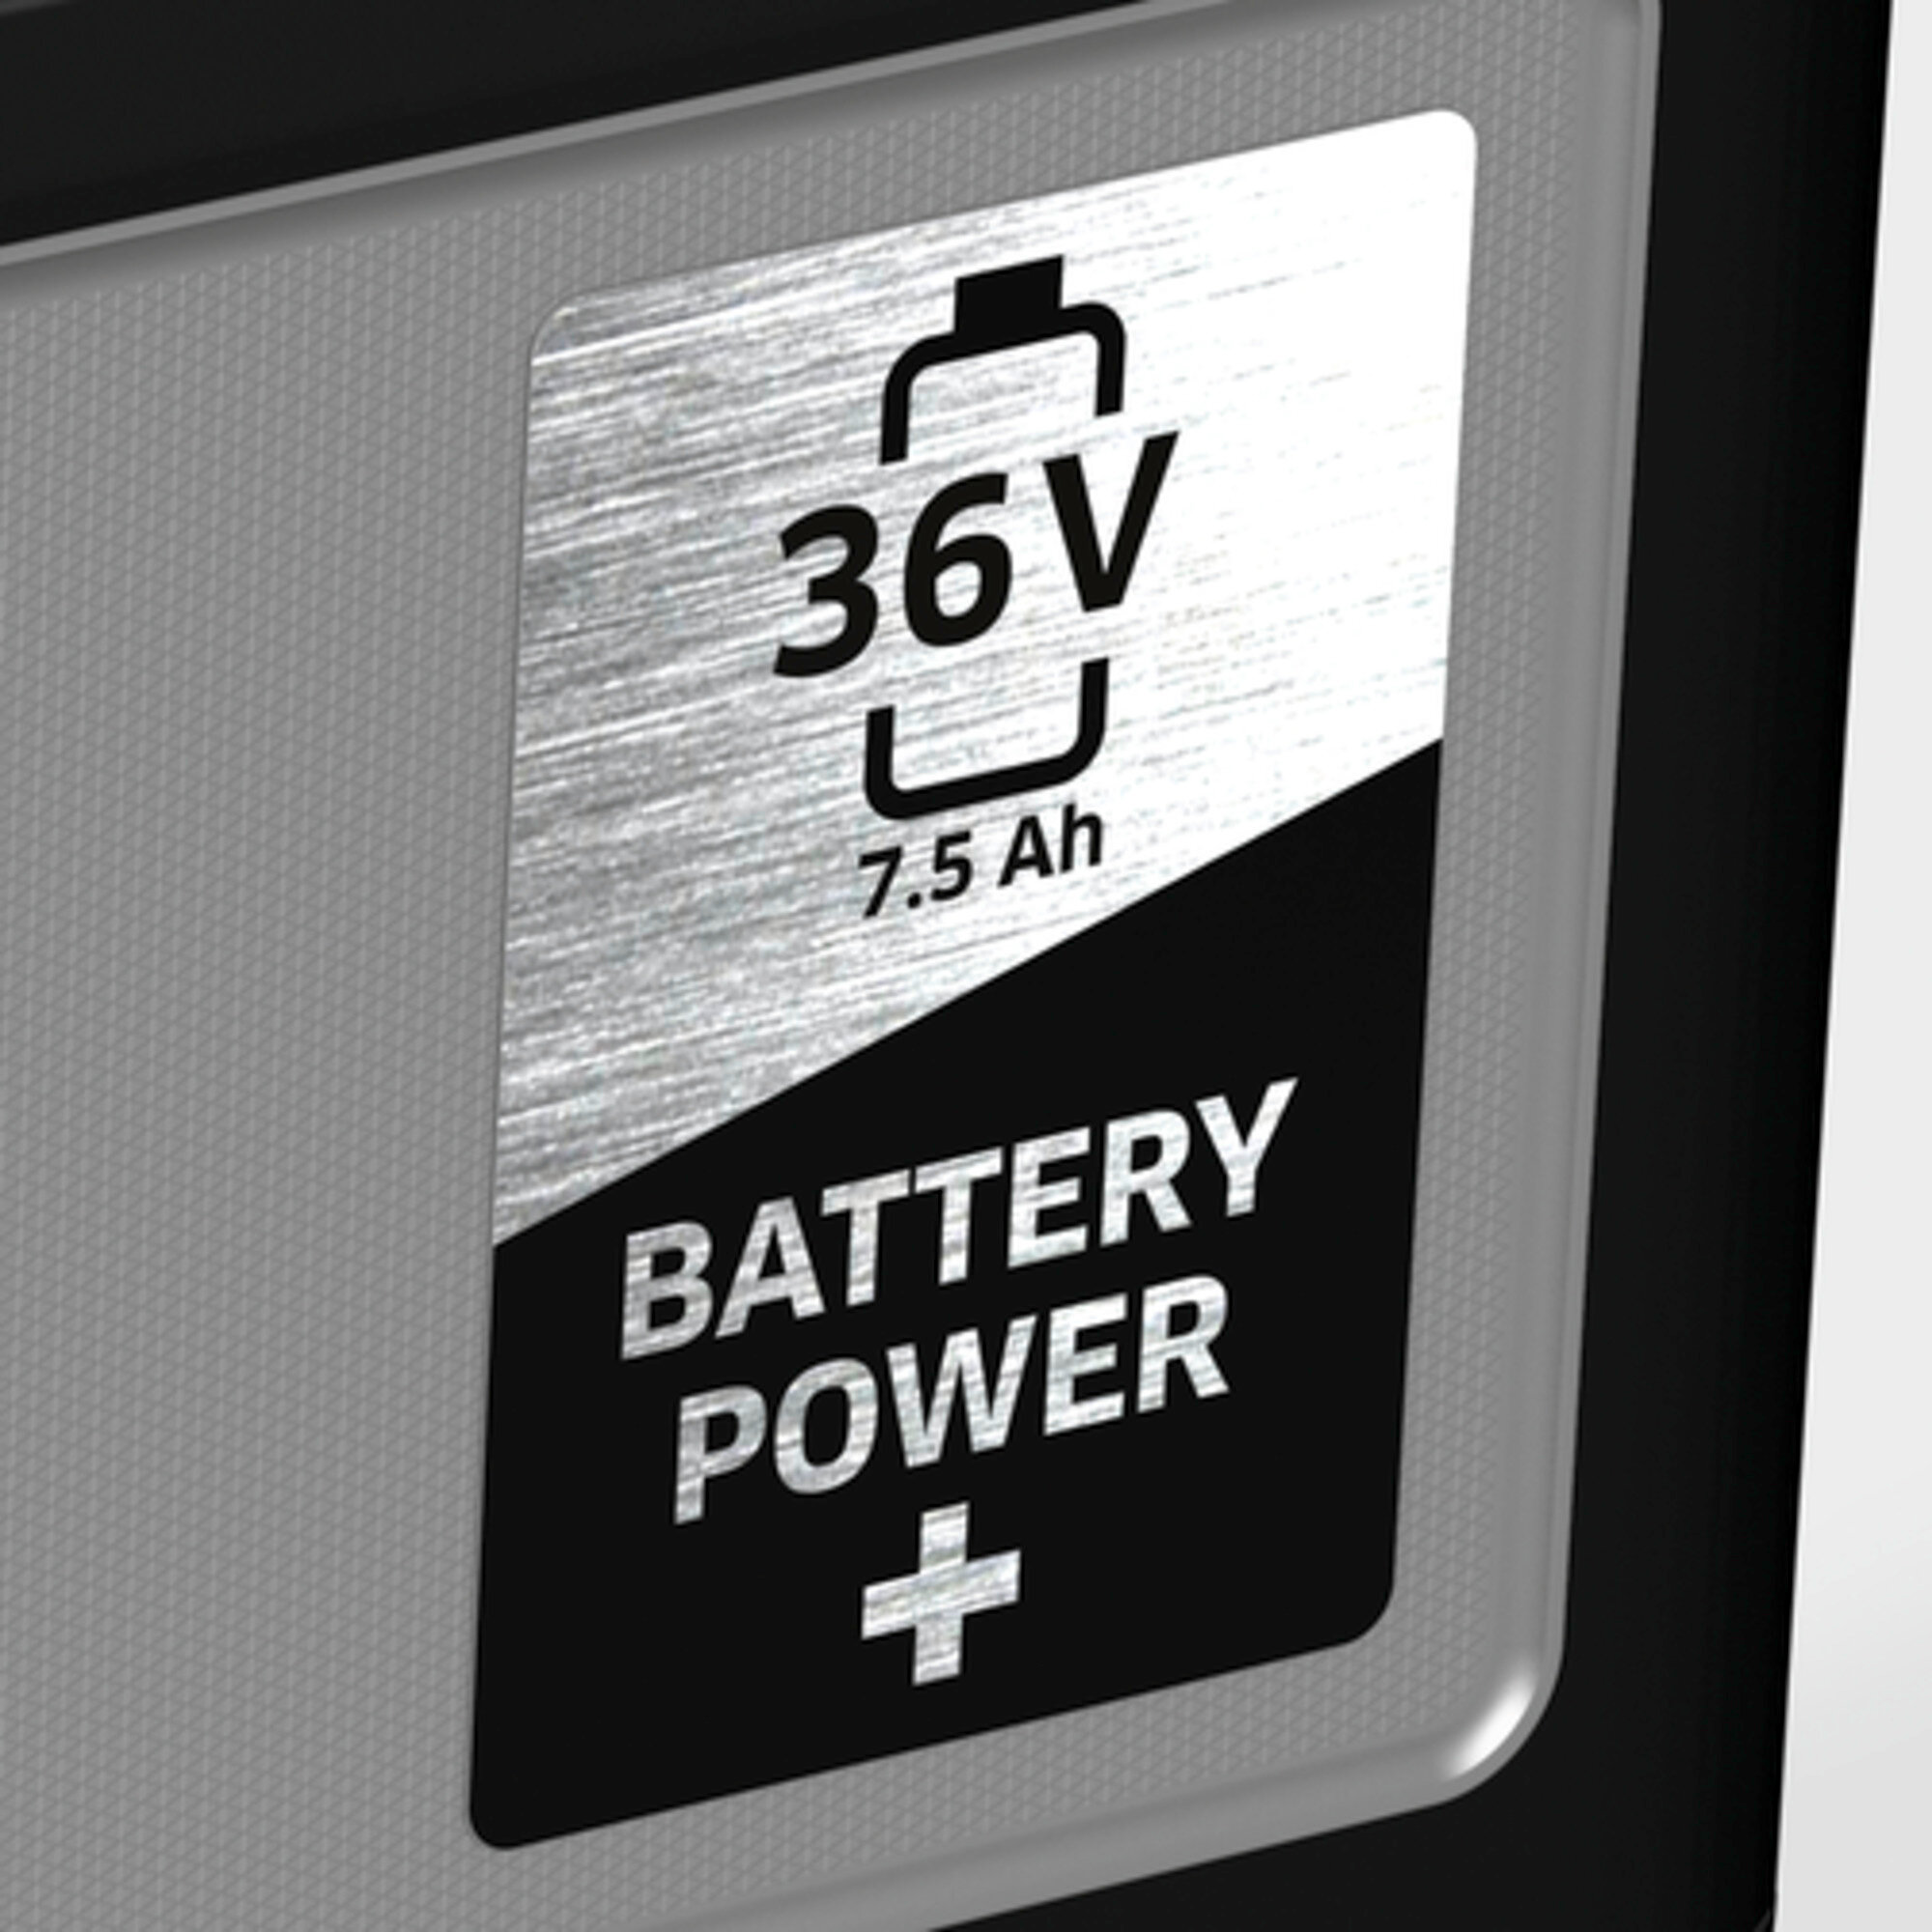  Battery Power+ 36/75: 36 V Kärcher accuplatform